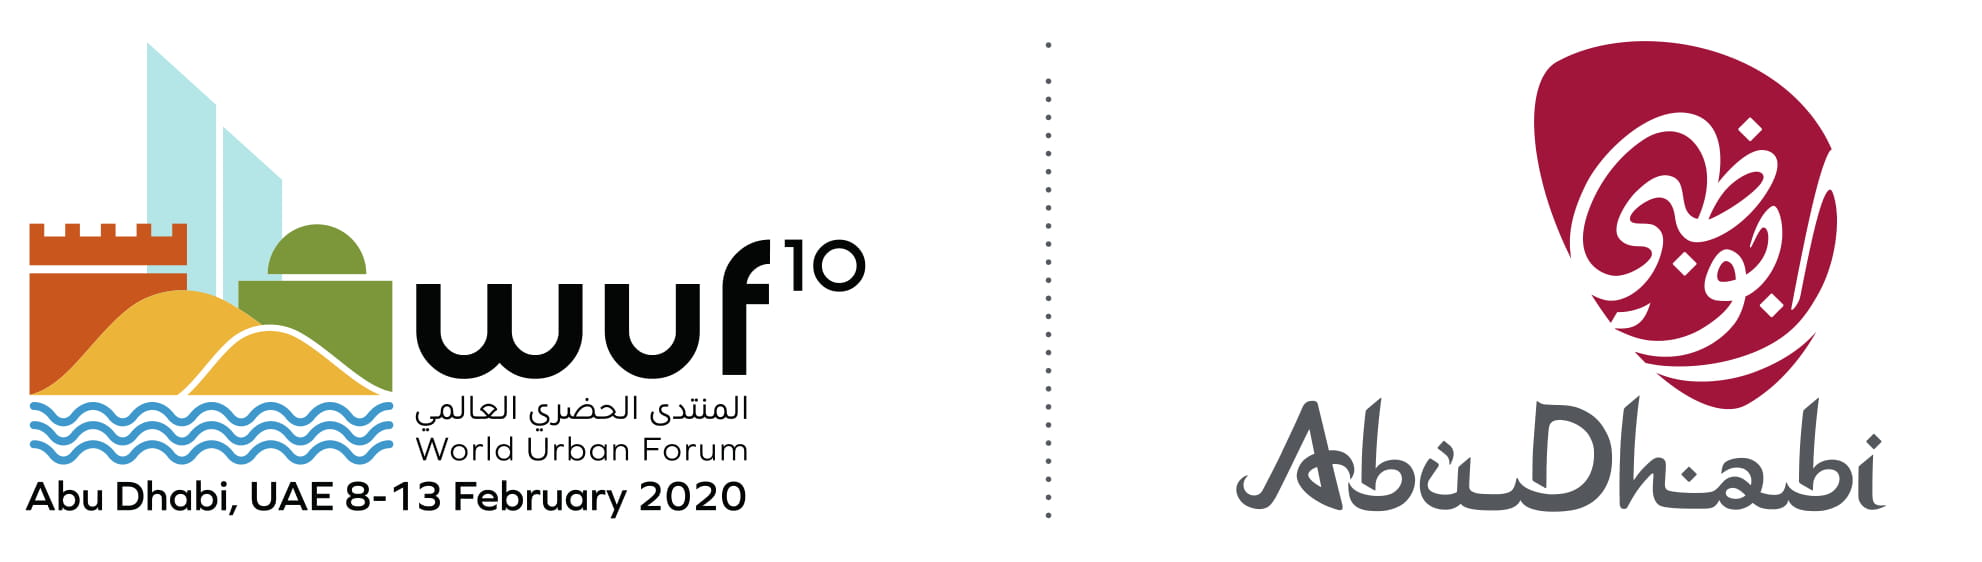 WUF10 logos